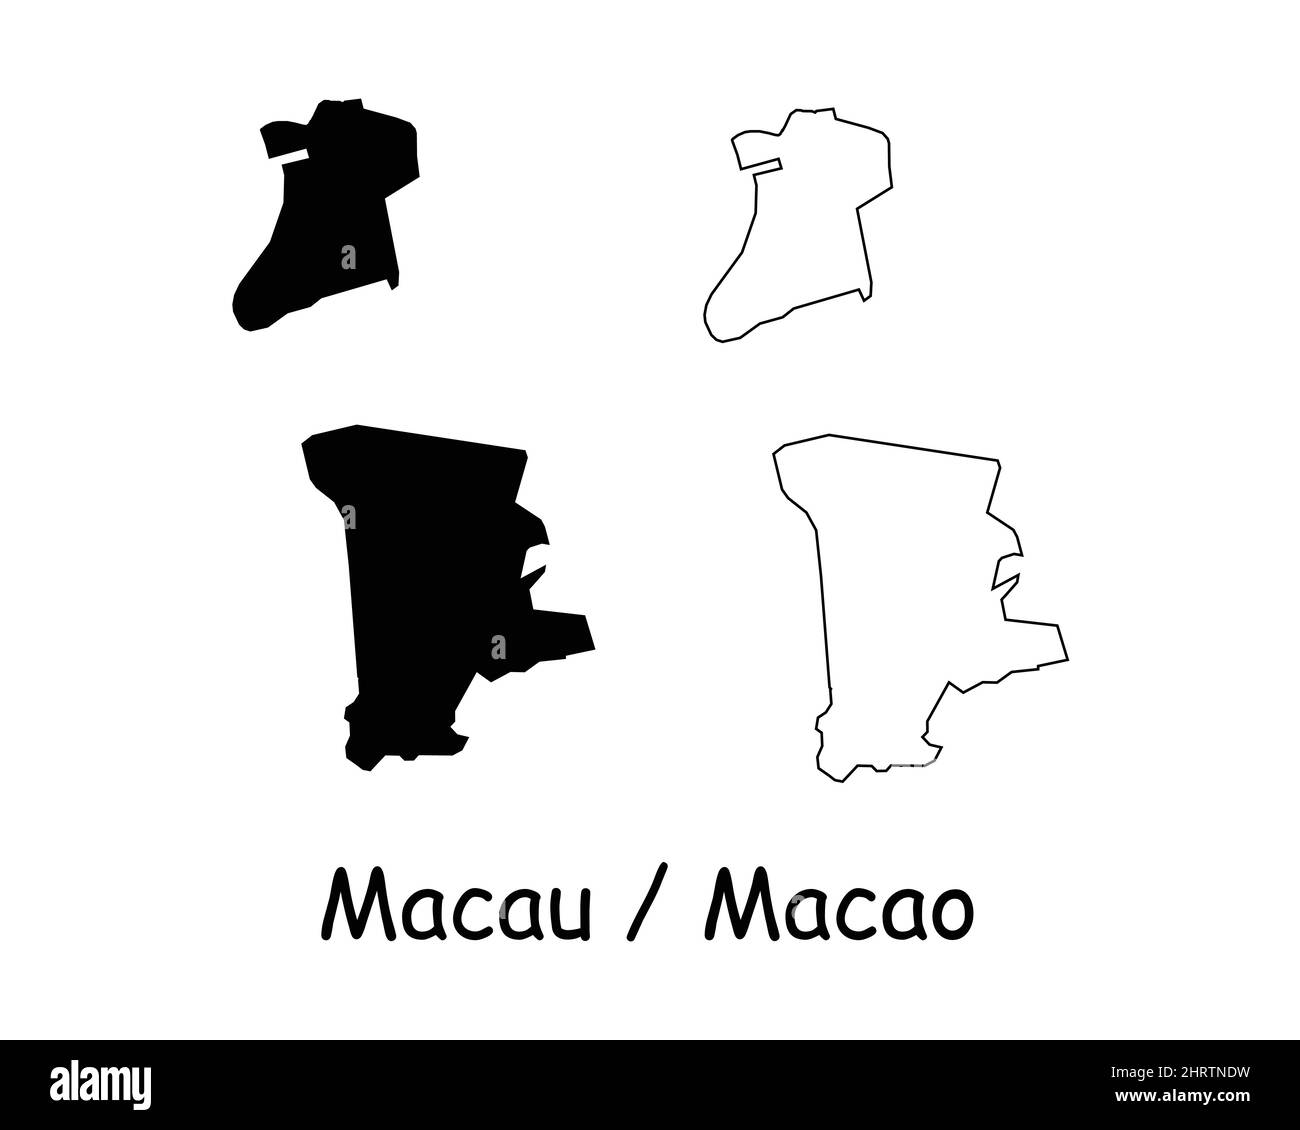 Carte de Macao. Macao Silhouette noire et carte de contour isolée sur fond blanc. Icône de la ligne limite de la frontière macanaise symbole Clipart EPS Vector Illustration de Vecteur